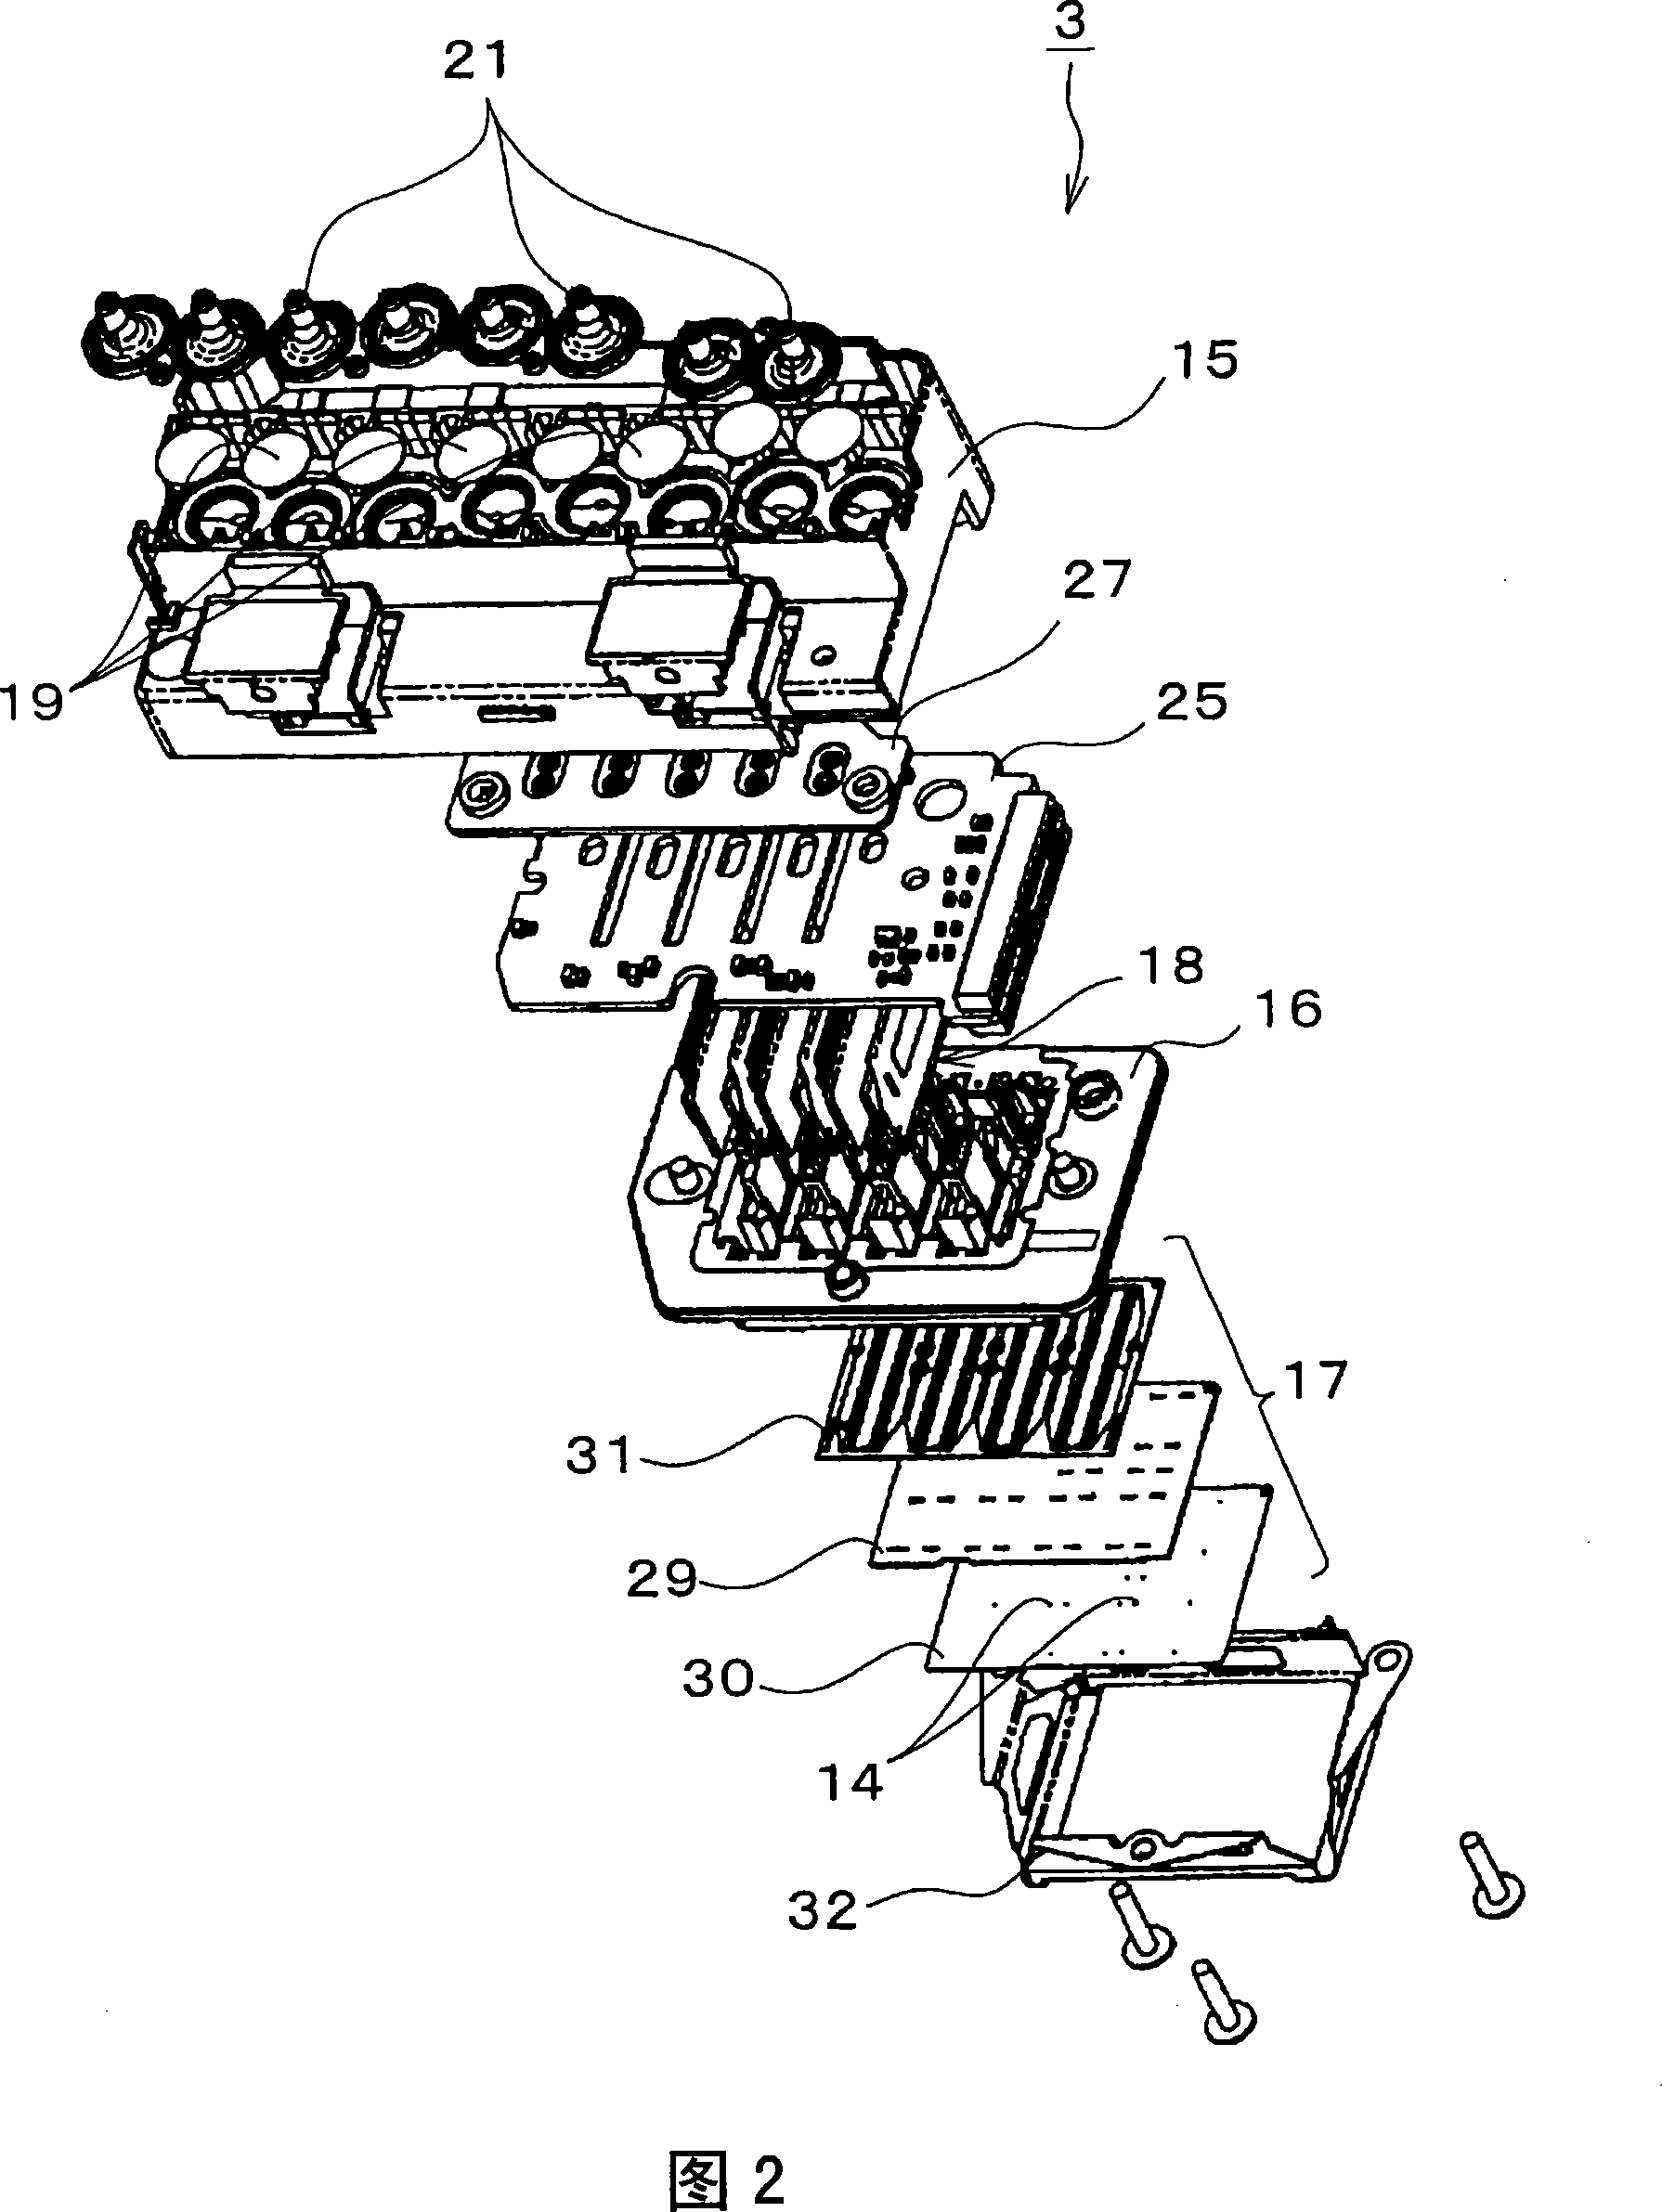 Liquid-jet apparatus